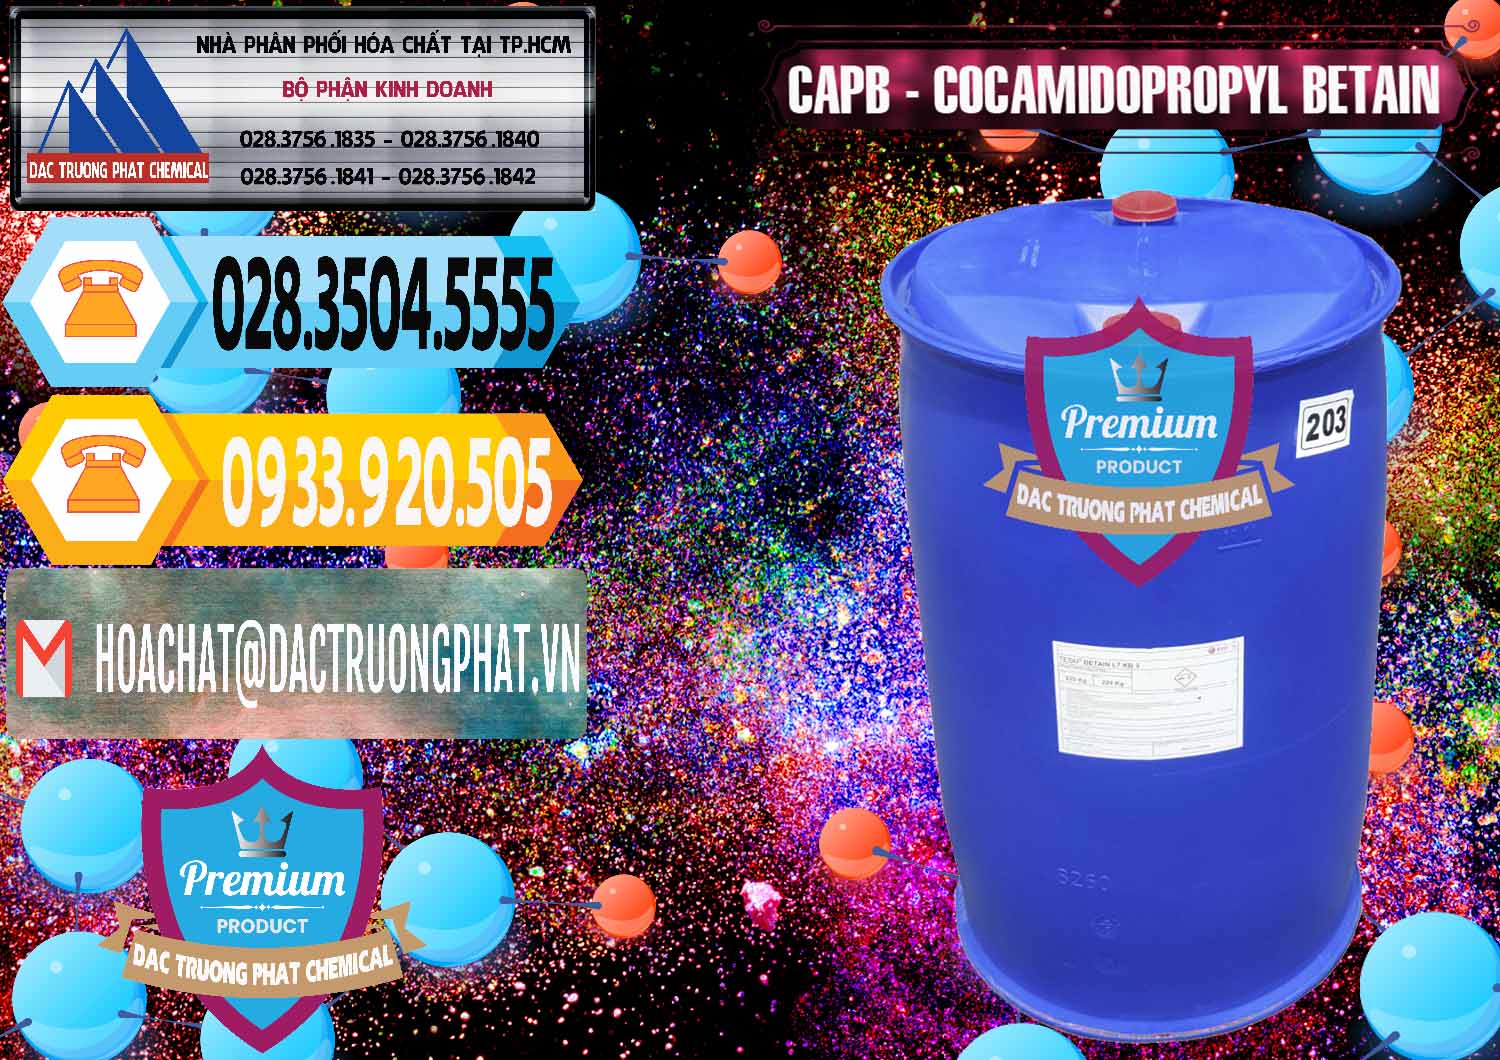 Công ty cung ứng - bán Cocamidopropyl Betaine - CAPB Tego Indonesia - 0327 - Cty chuyên bán _ cung cấp hóa chất tại TP.HCM - hoachattayrua.net